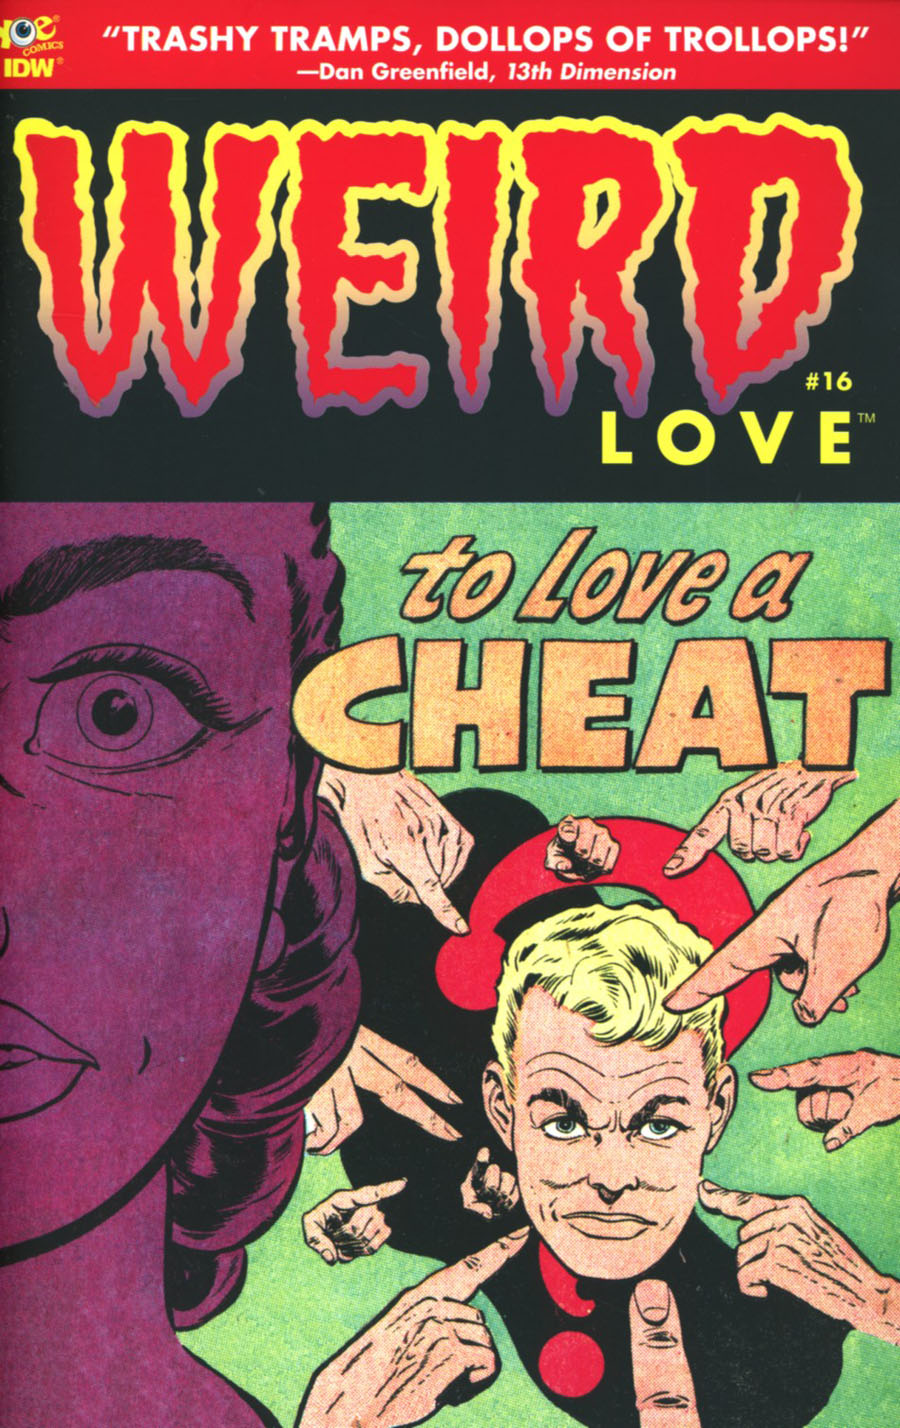 Weird Love #16